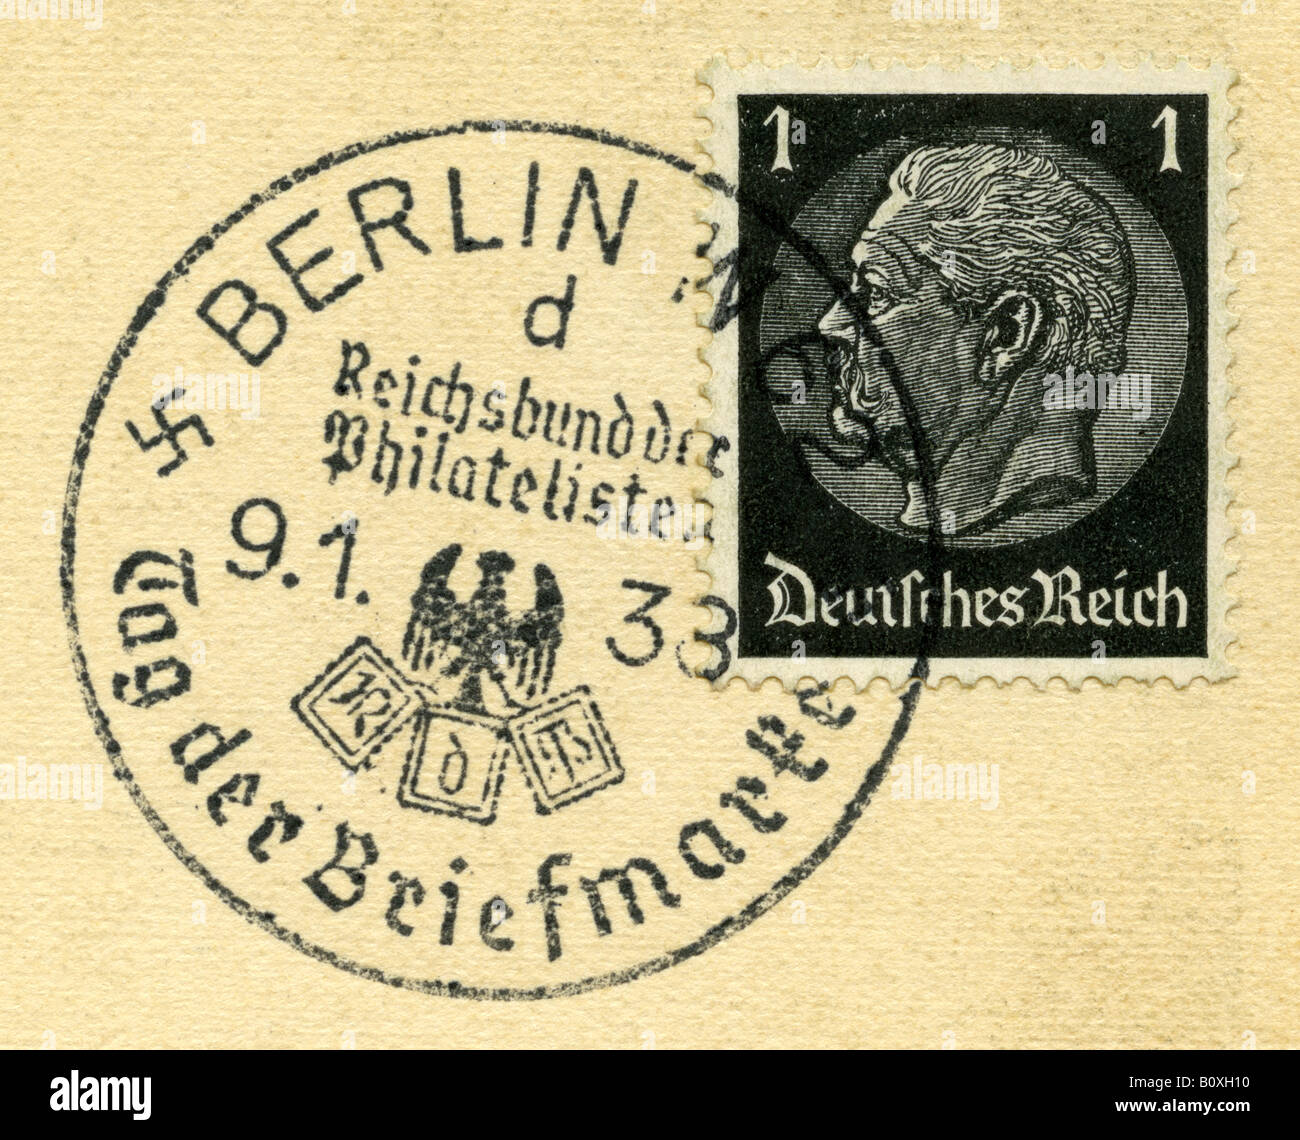 Germany Deutsches Reich 1 pfennig Hindenburg issue, postmarked Berlin 1938. Stock Photo